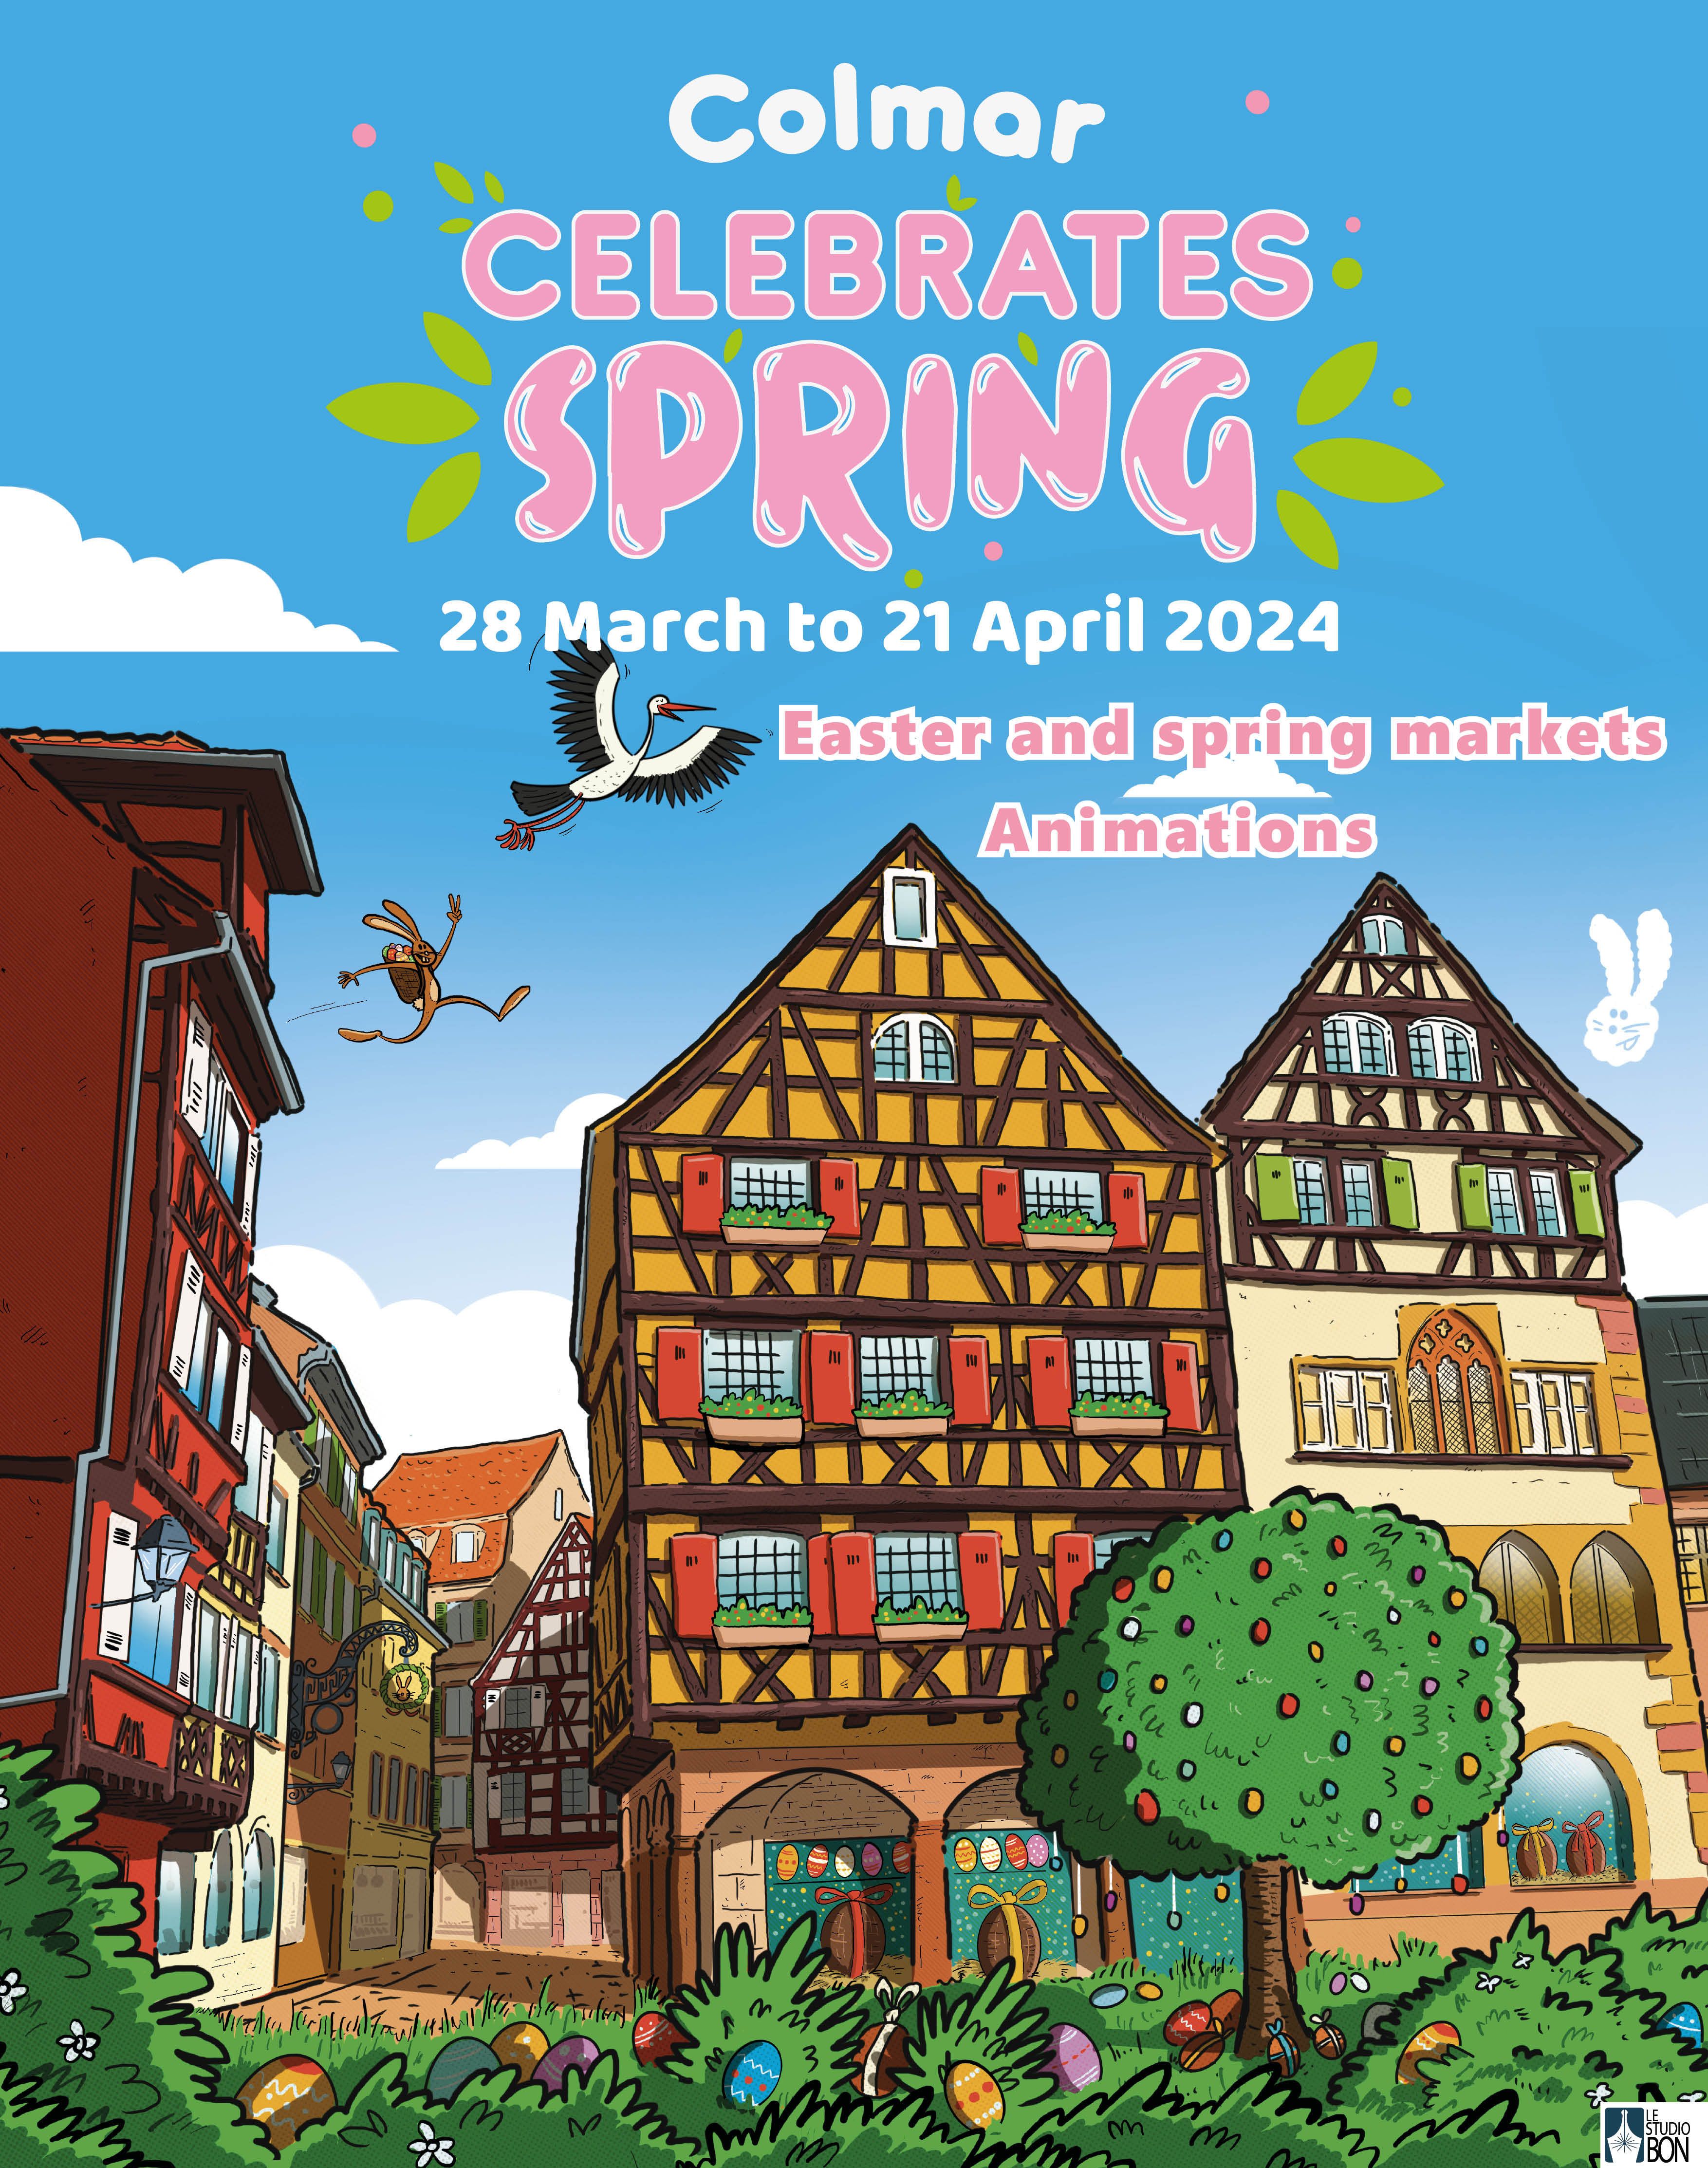 Colmar celebrates spring